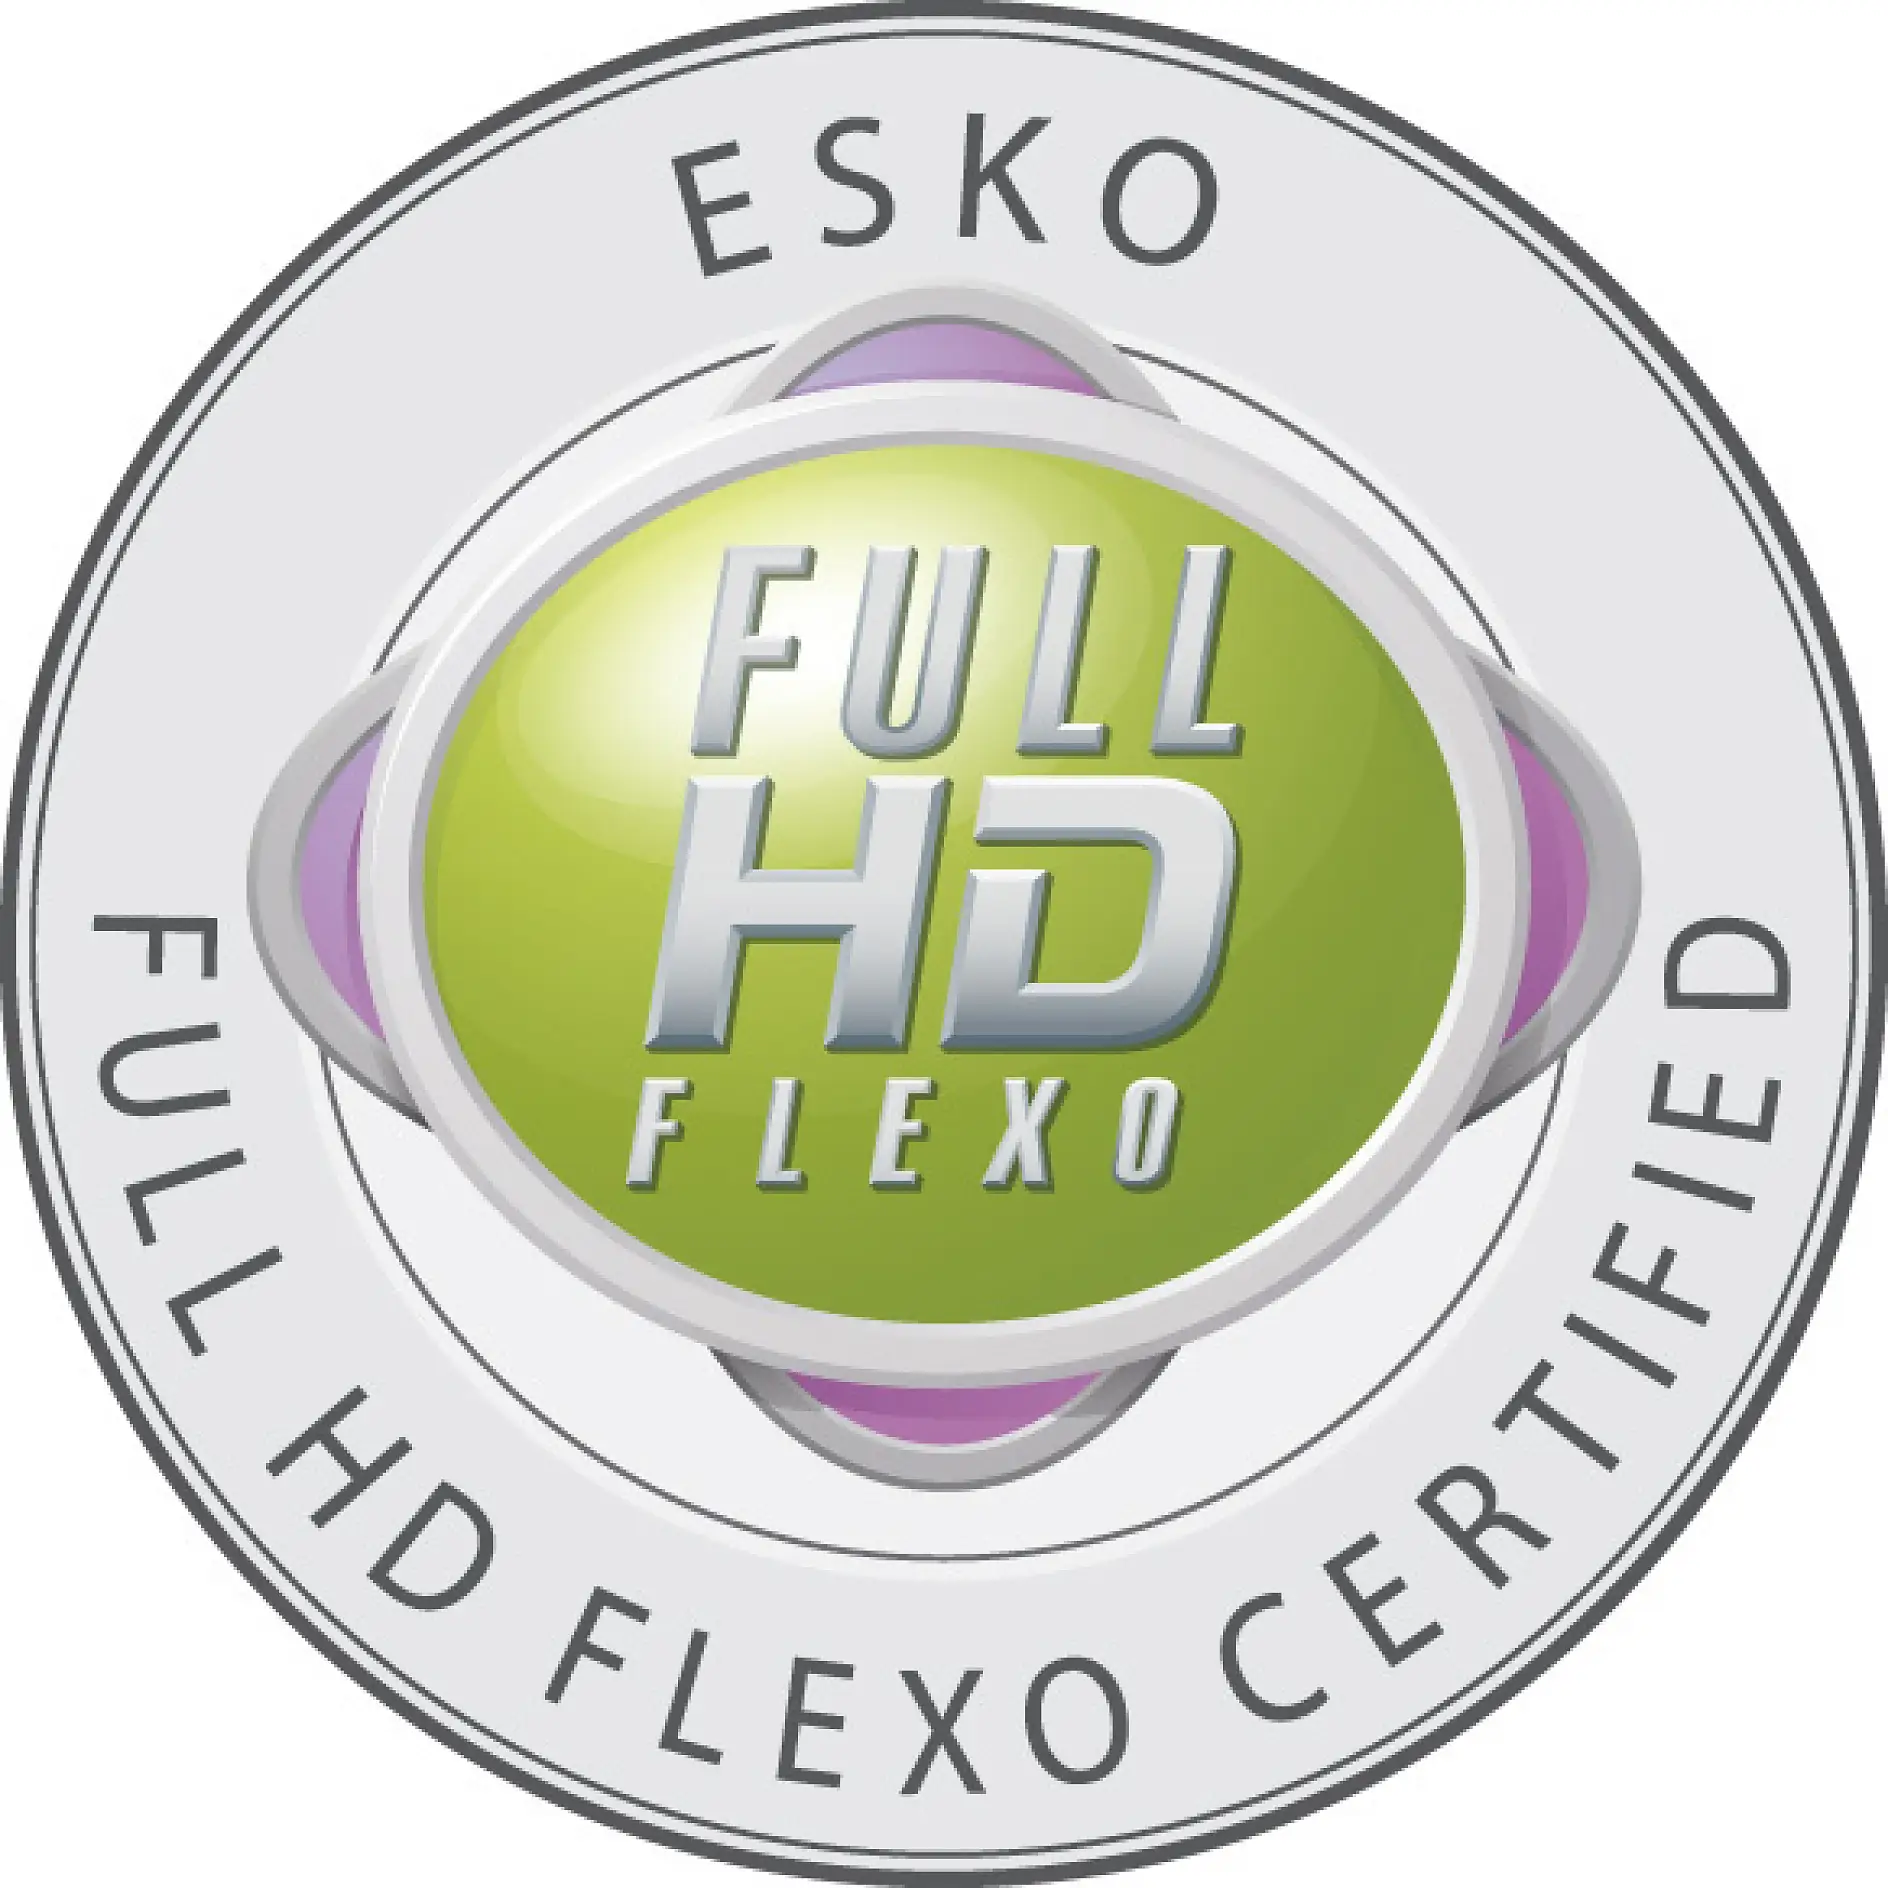 Seules les entreprises certifiées sont autorisées à porter l’insigne Full HD Flexo